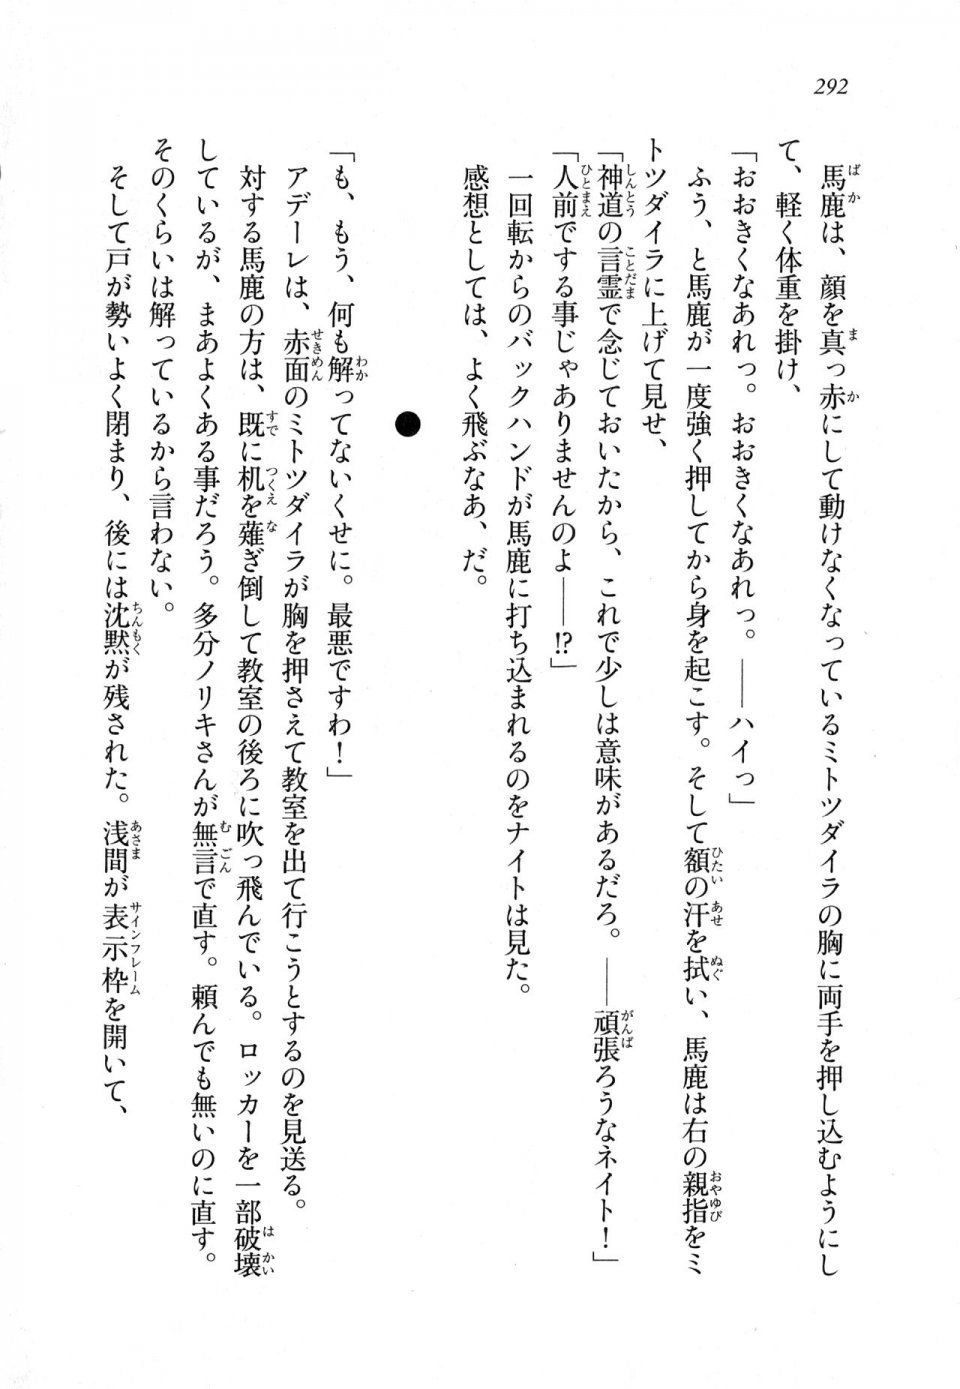 Kyoukai Senjou no Horizon LN Sidestory Vol 1 - Photo #290